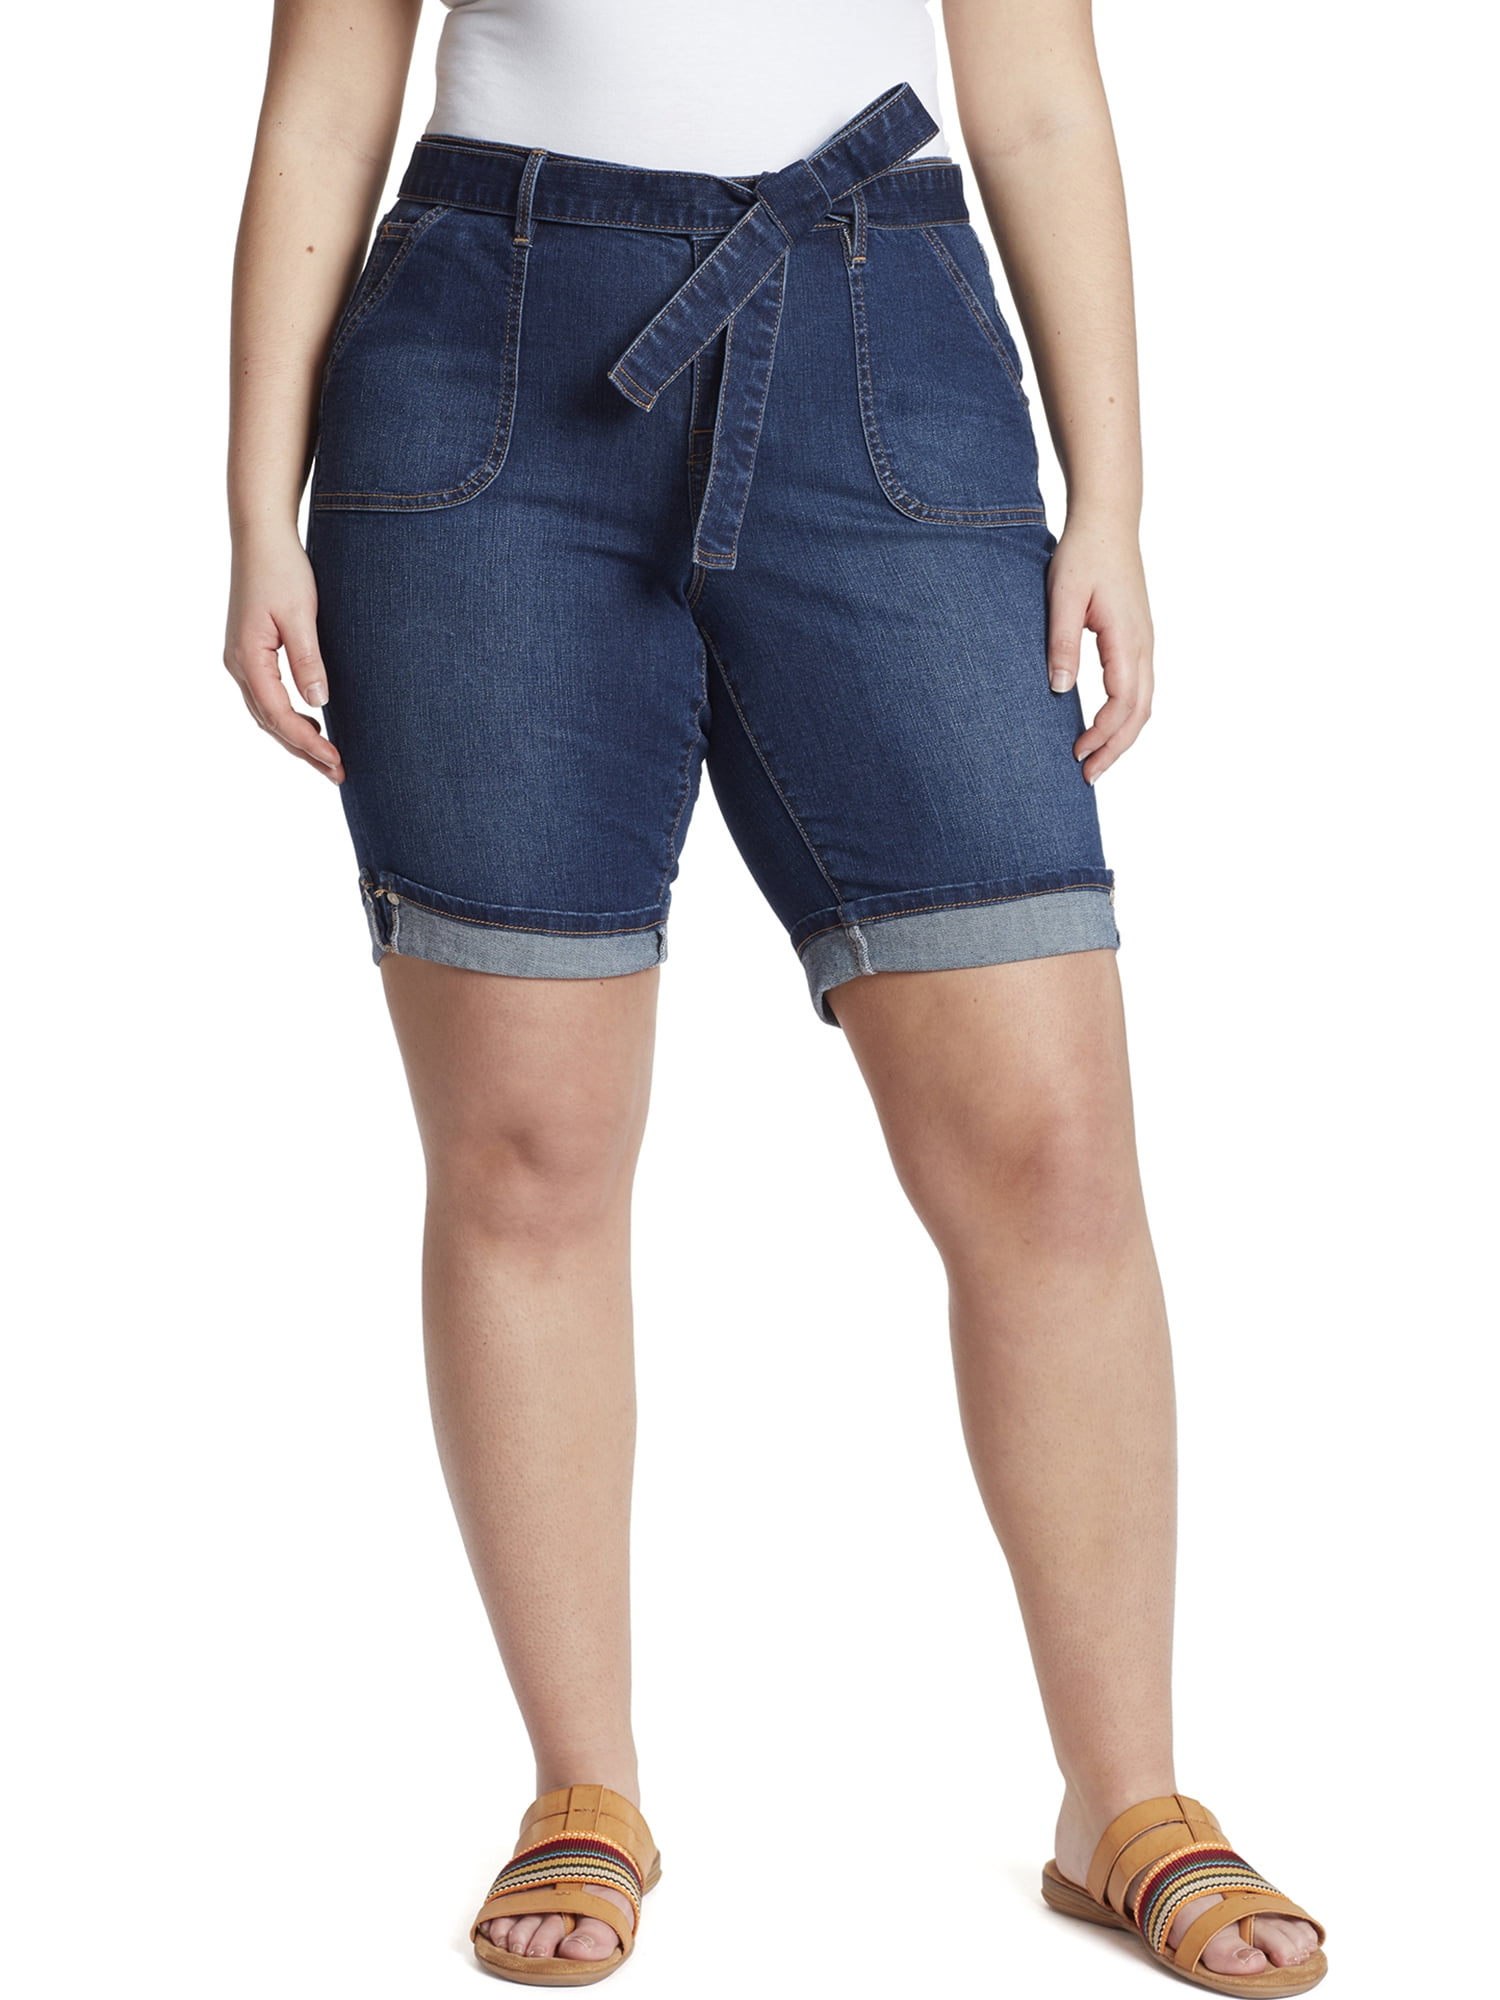 Select Size & Color NWT Gloria Vanderbilt  Violet Belted Shorts 